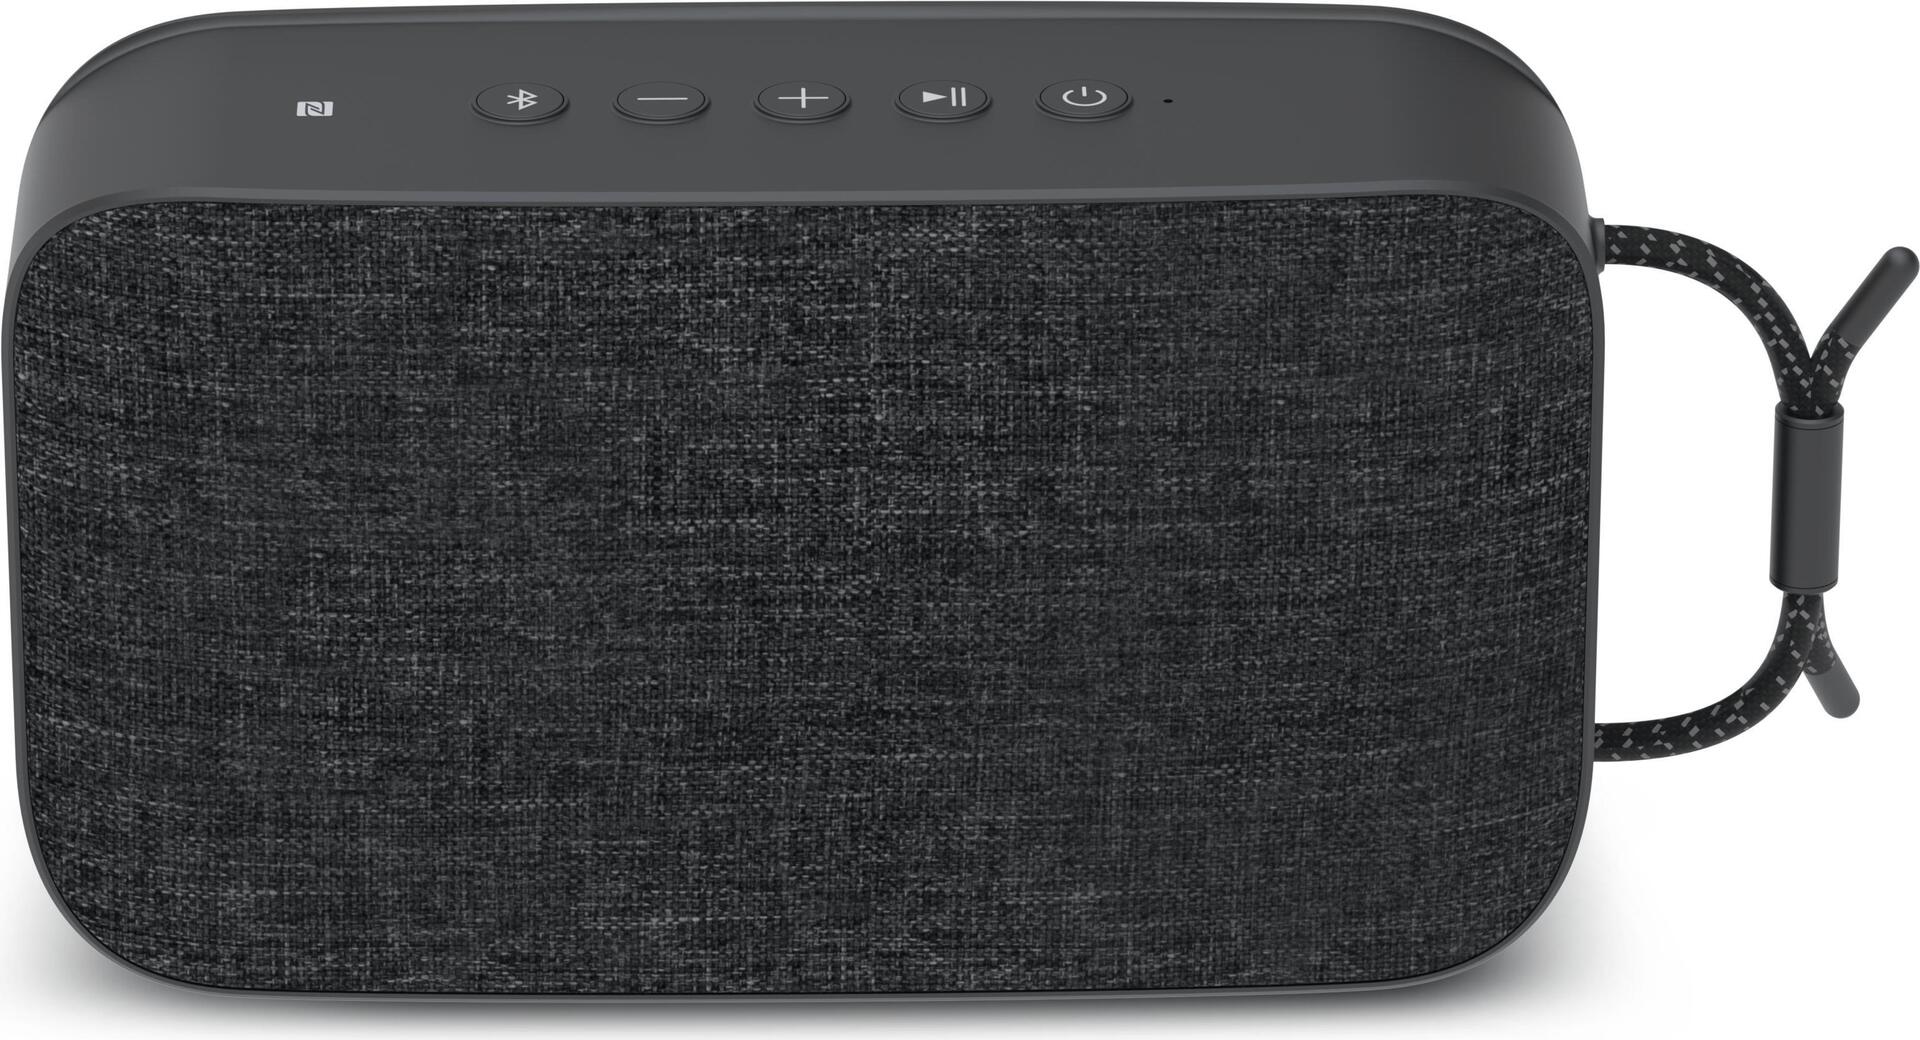 TechniSat Bluspeaker TWS XL Tragbarer Stereo-Lautsprecher Schwarz 30 W (0000/9119)